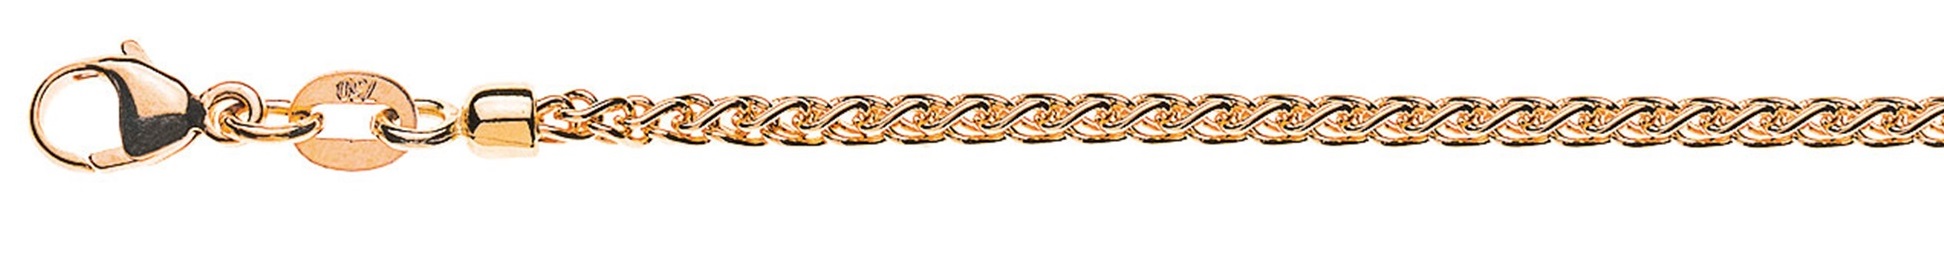 AURONOS Prestige Necklace rose gold 18K cable chain 40cm 2.15mm